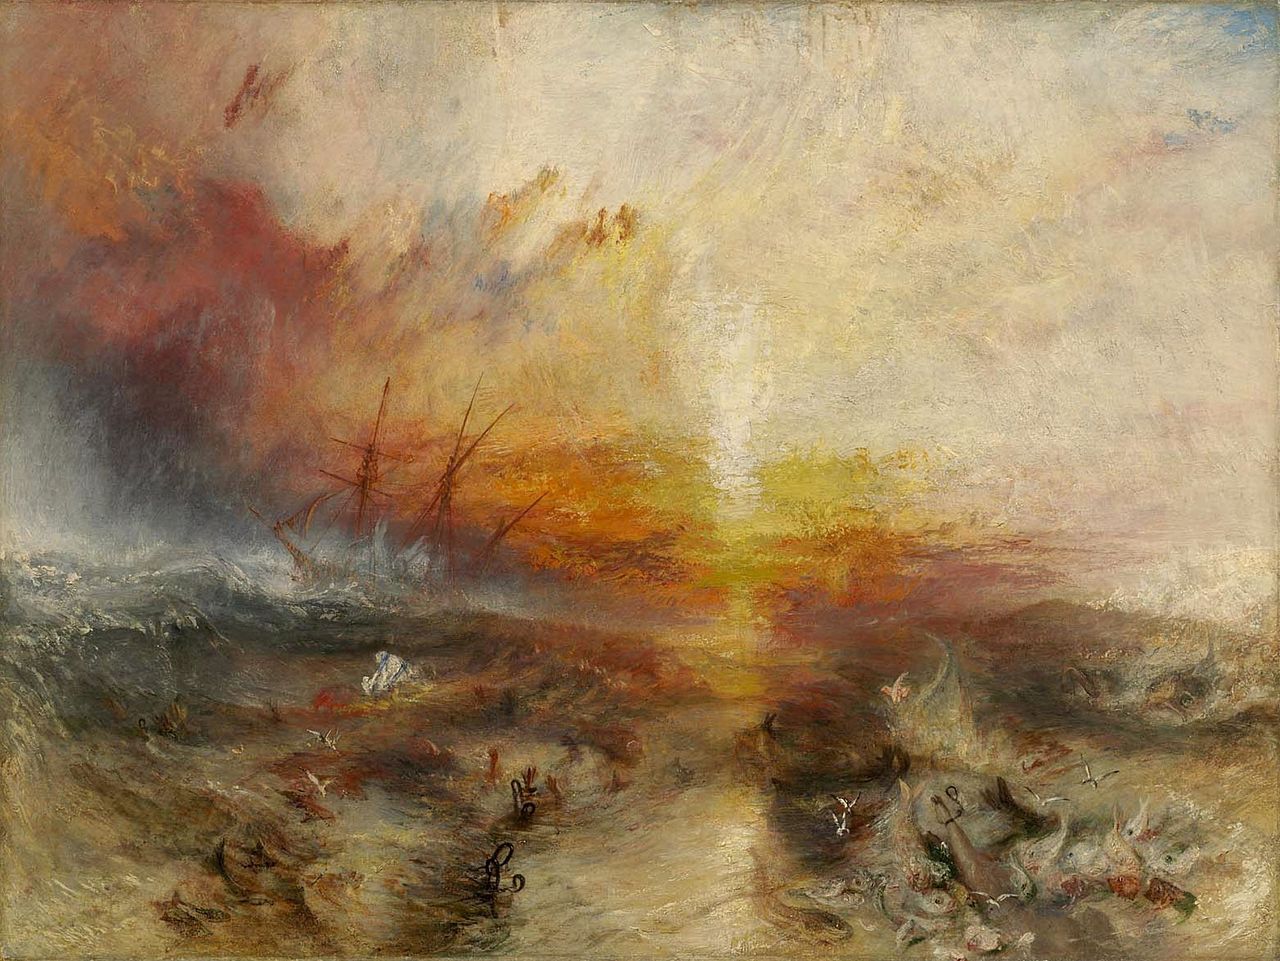 Otrokářská loď (Otrokáři házejí přes palubu mrtvé a umírající)) by Joseph Mallord William Turner - 1814 - 90,8 x 122,6 cm 